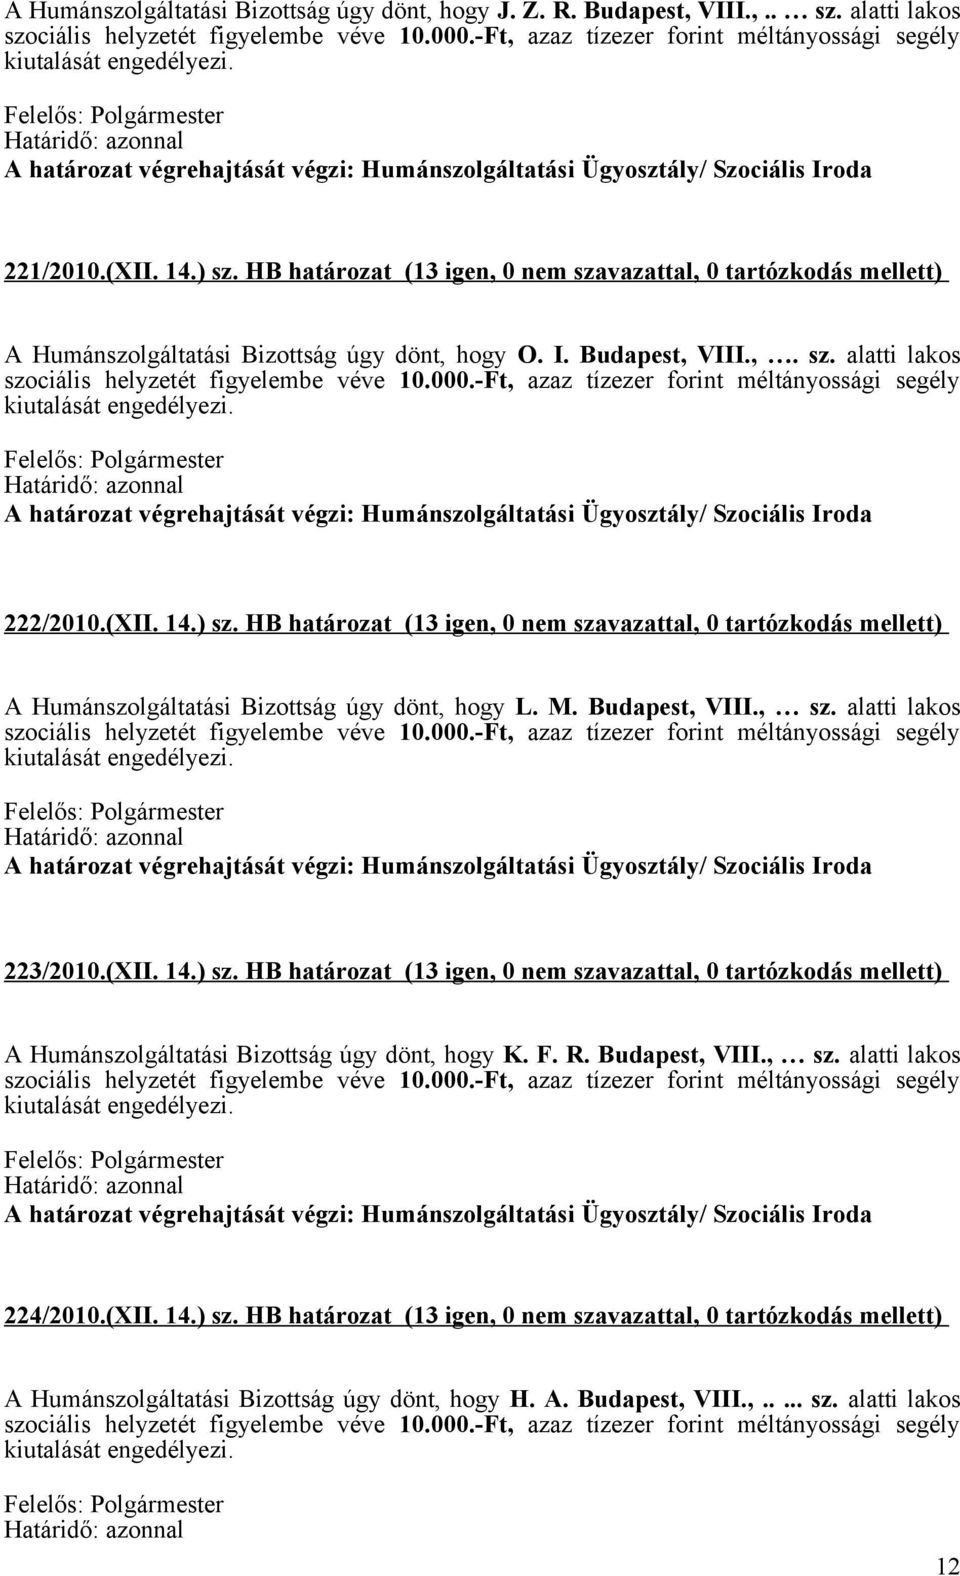 HB határozat (13 igen, 0 nem szavazattal, 0 tartózkodás mellett) A Humánszolgáltatási Bizottság úgy dönt, hogy L. M. Budapest, VIII., sz. alatti lakos 223/2010.(XII. 14.) sz.